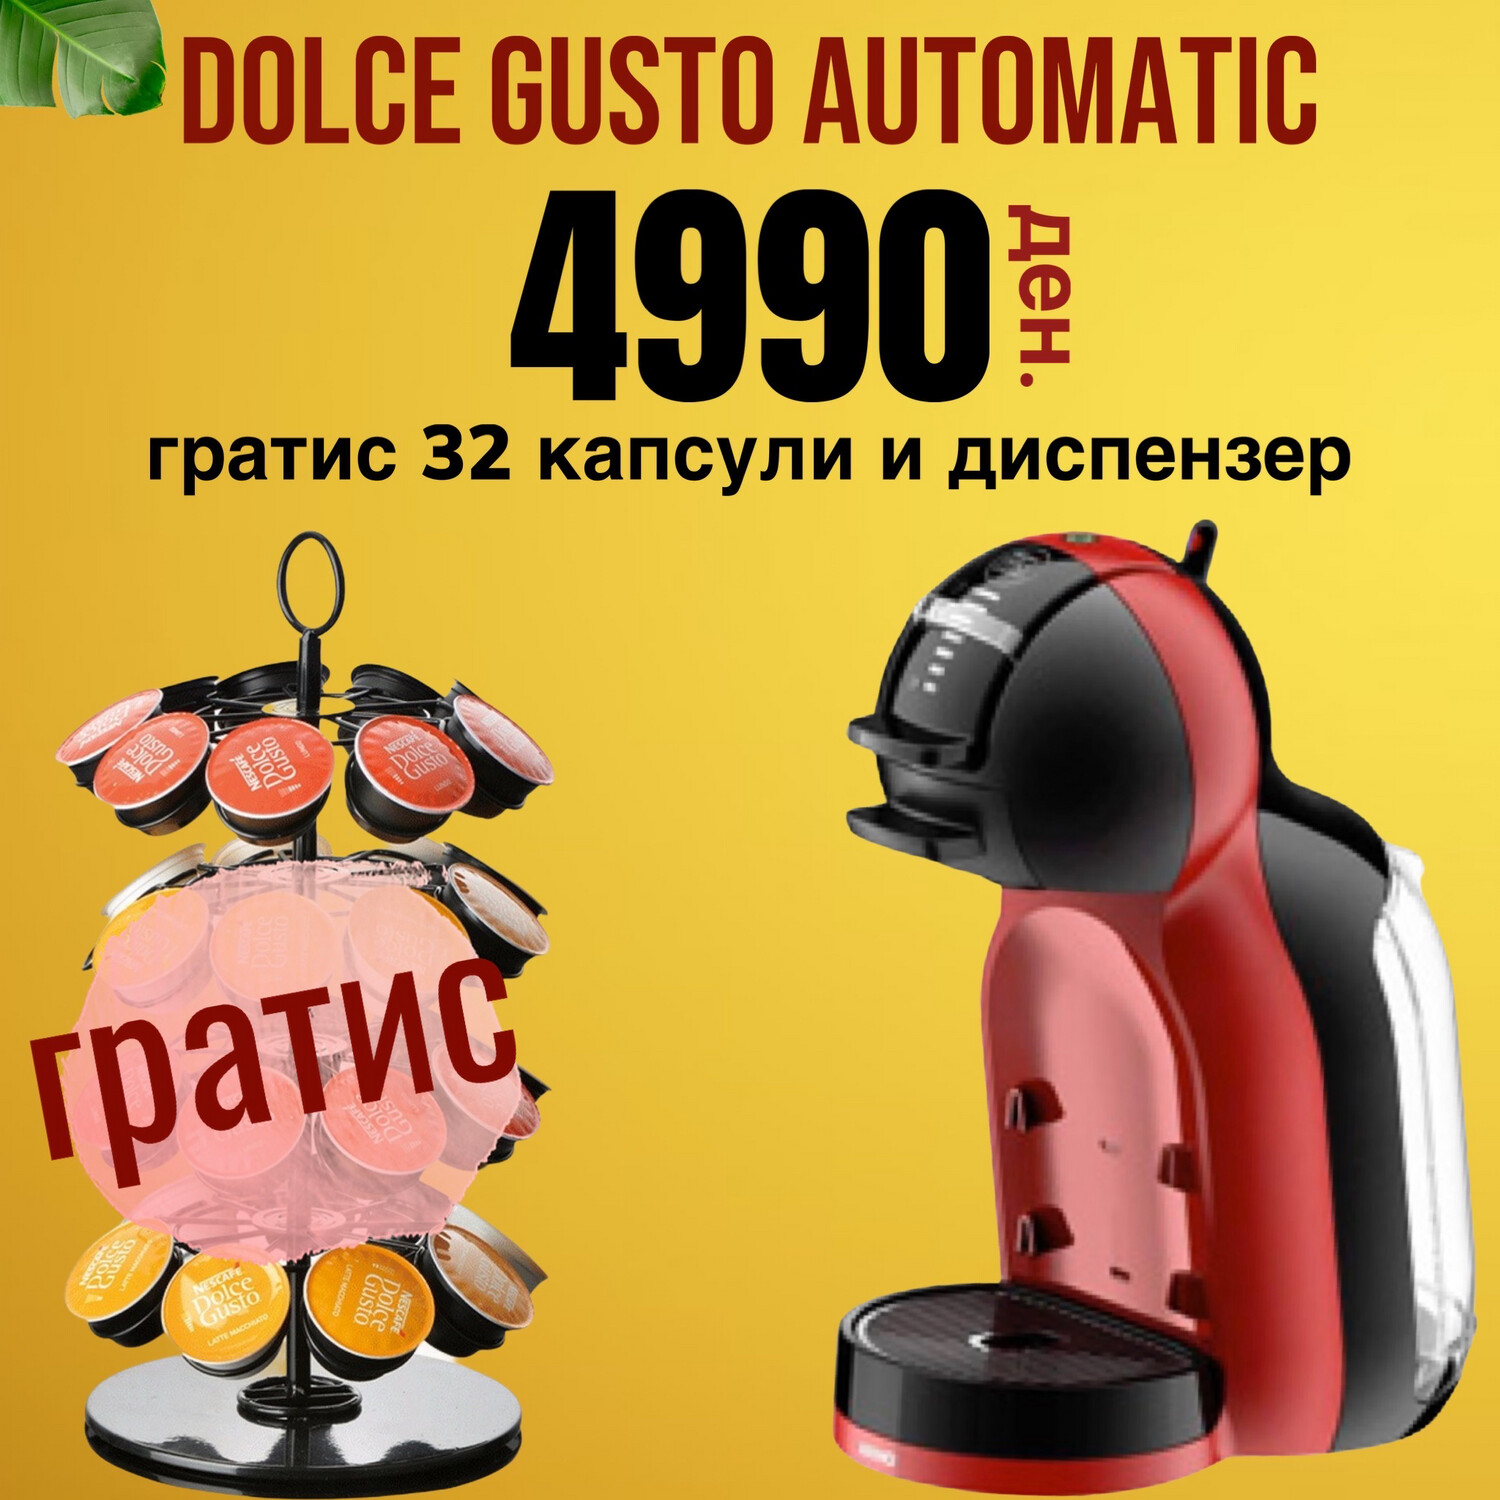 Dolce Gusto ME Automatic Edition со Гратис 32 капсули и диспензер